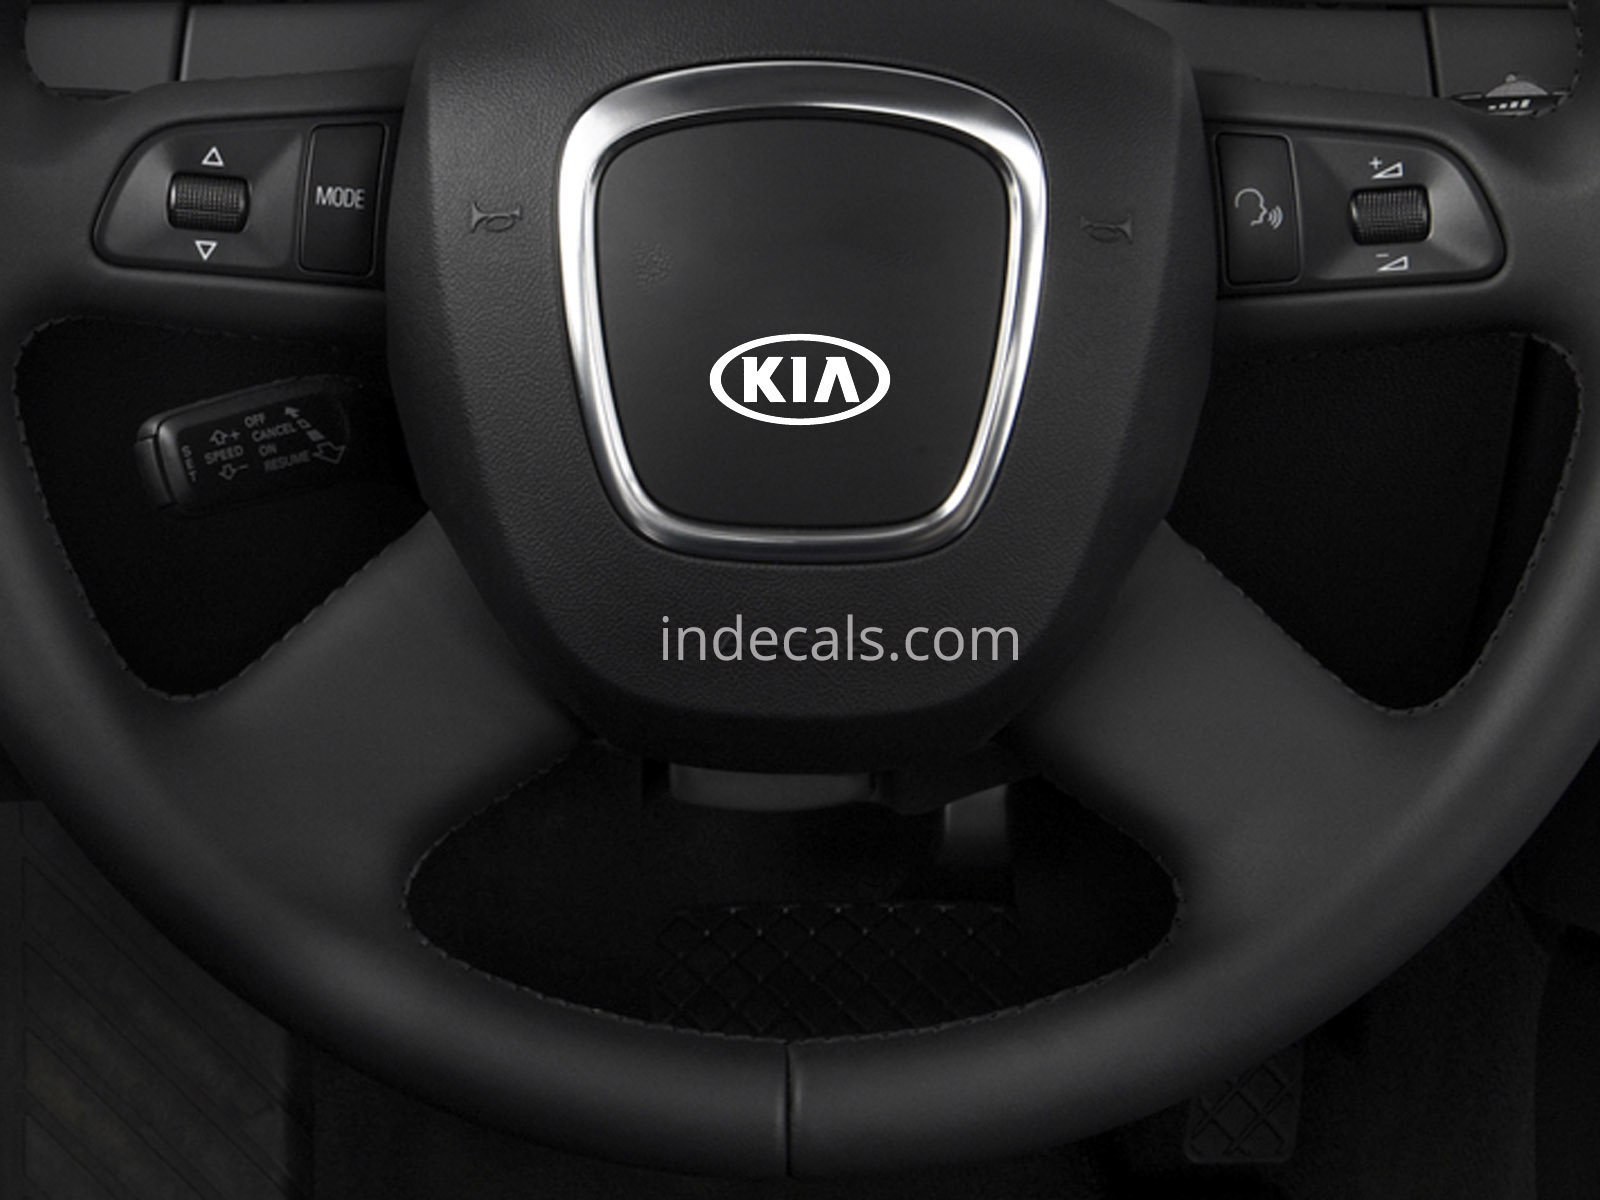 3 x KIA Stickers for Steering Wheel - White